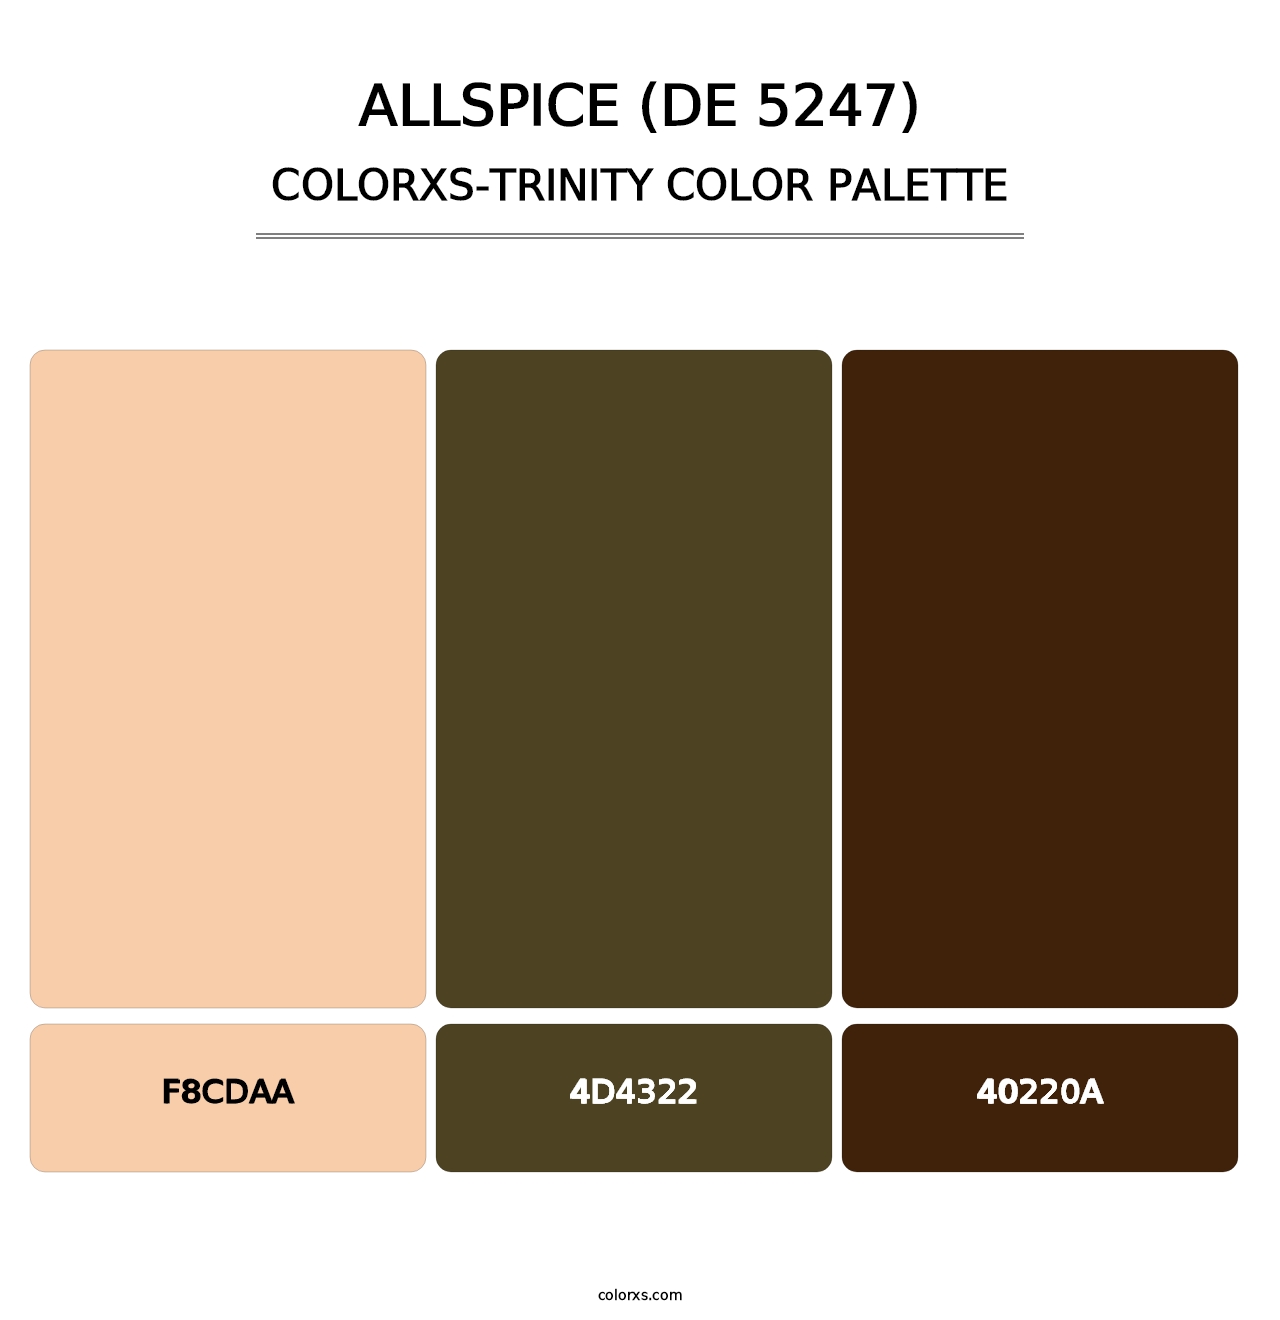 Allspice (DE 5247) - Colorxs Trinity Palette